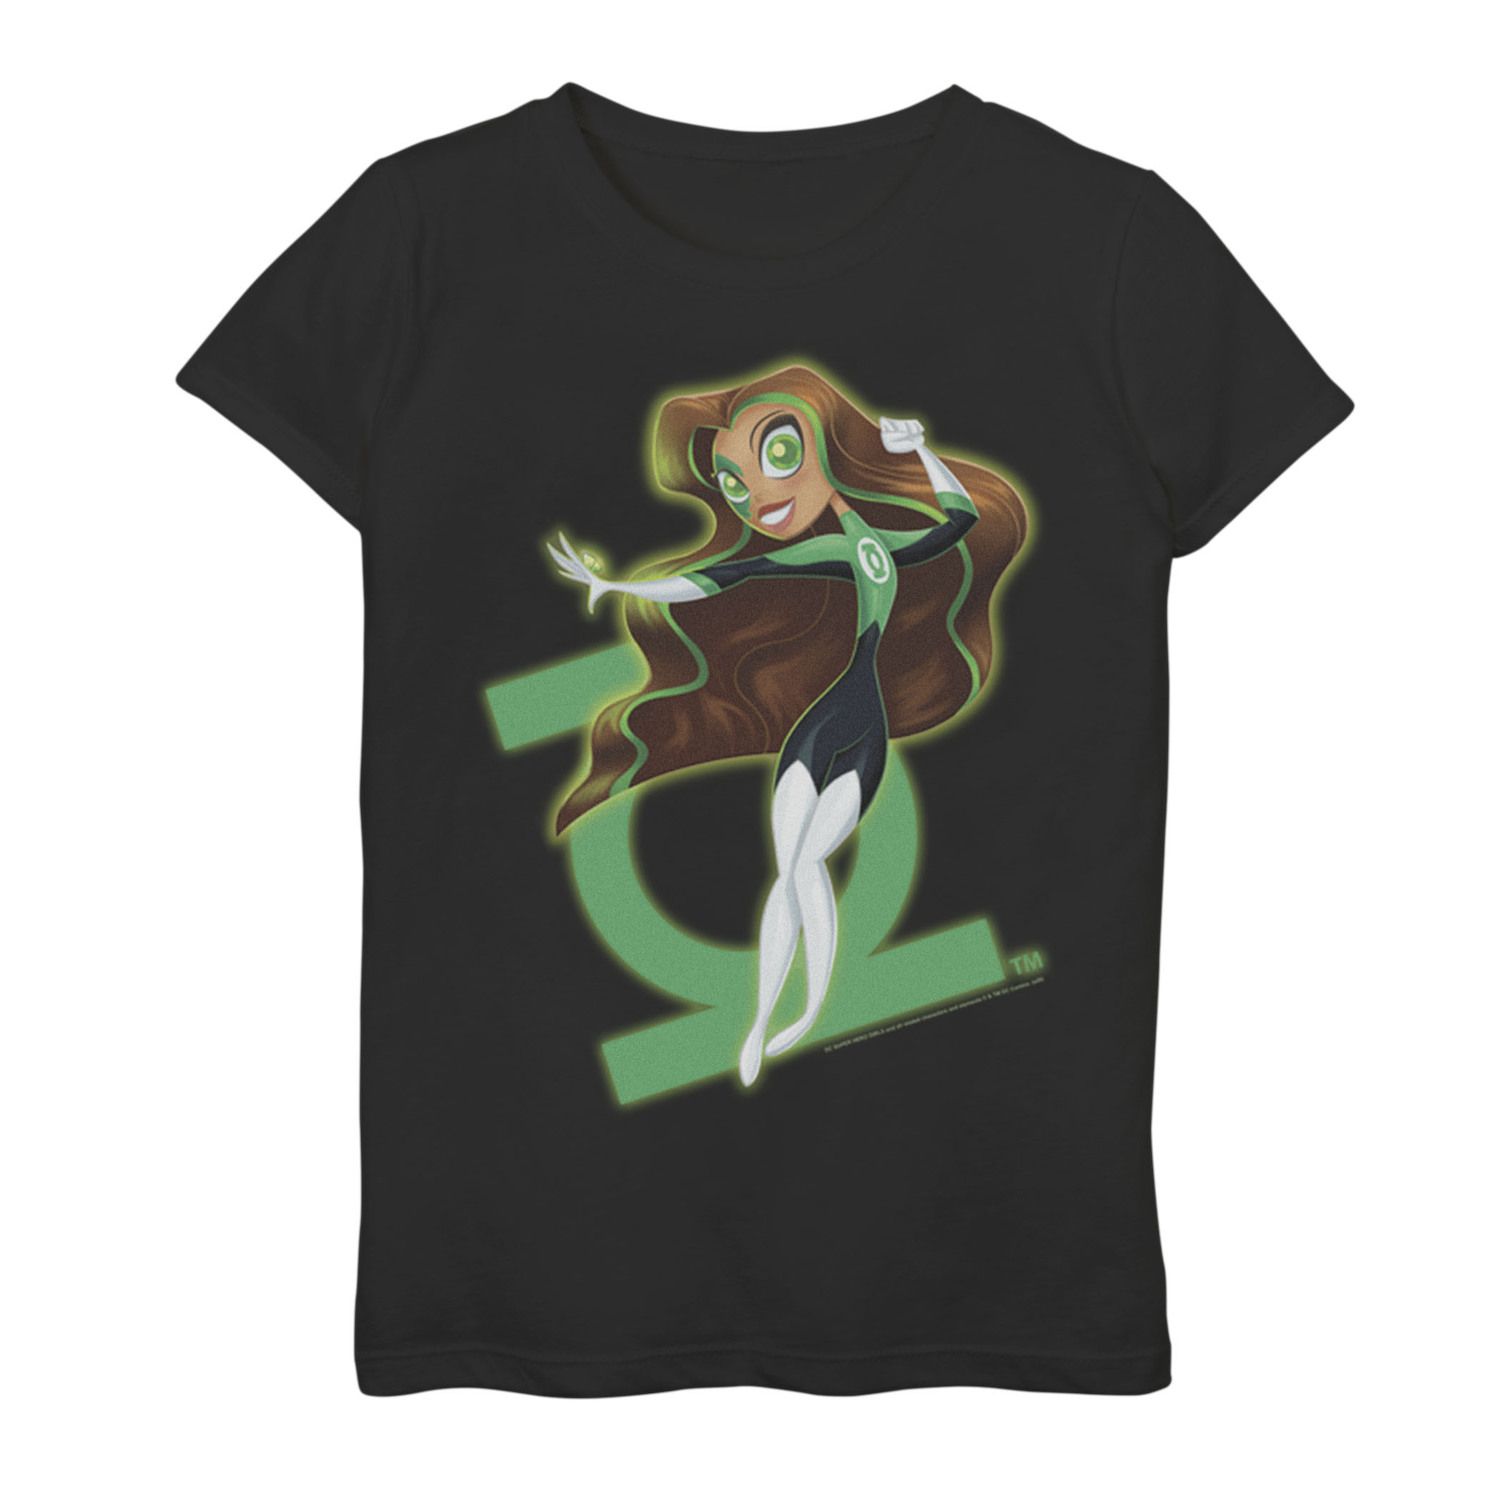 super hero girls shirts